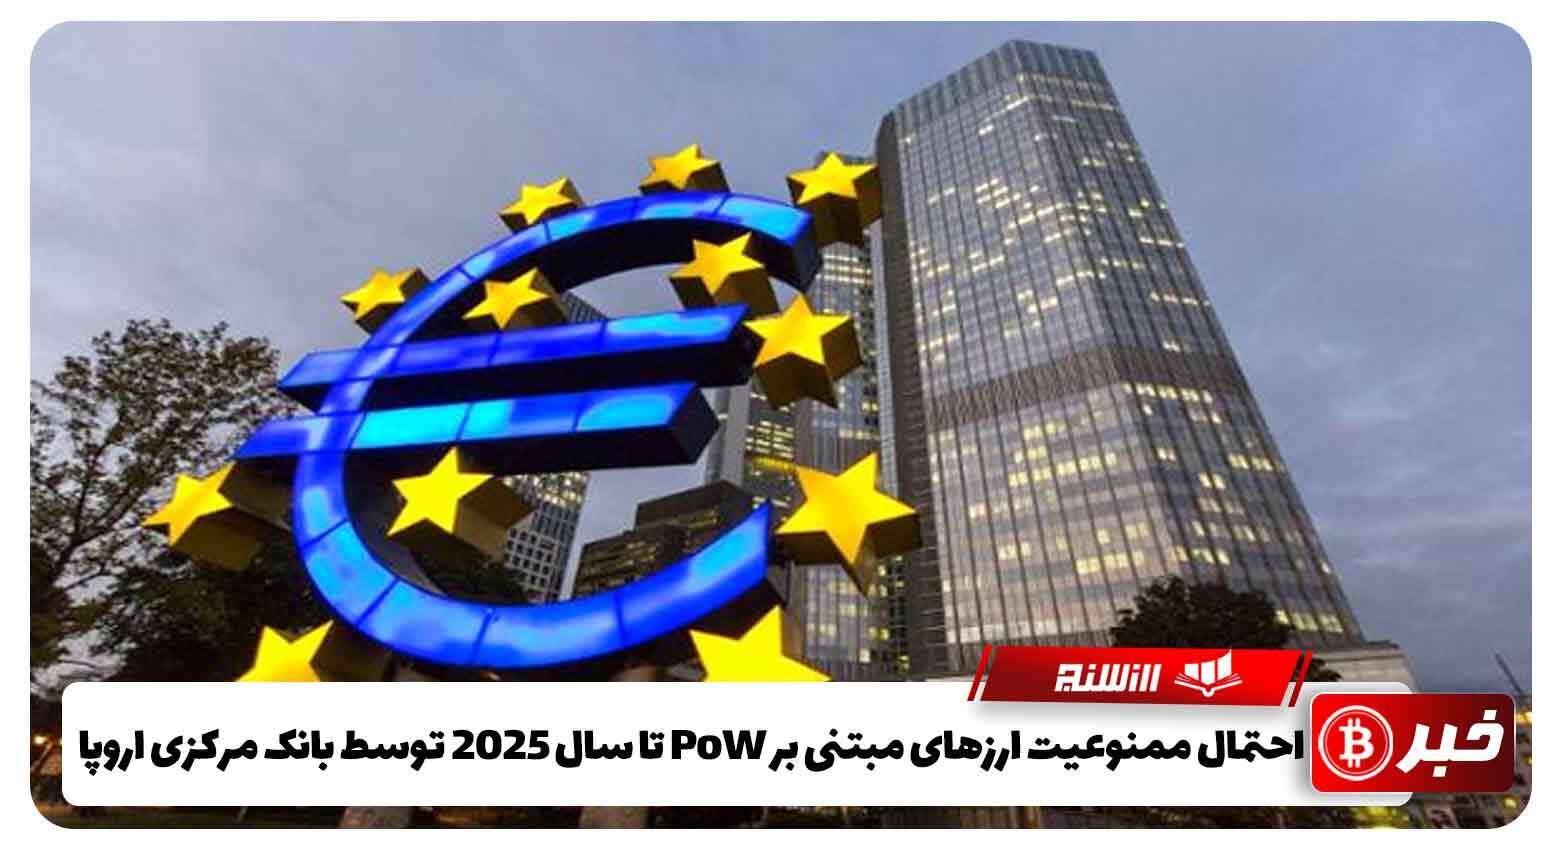 احتمال ممنوعیت ارزهای مبتنی بر PoW تا سال 2025 توسط بانک مرکزی اروپا